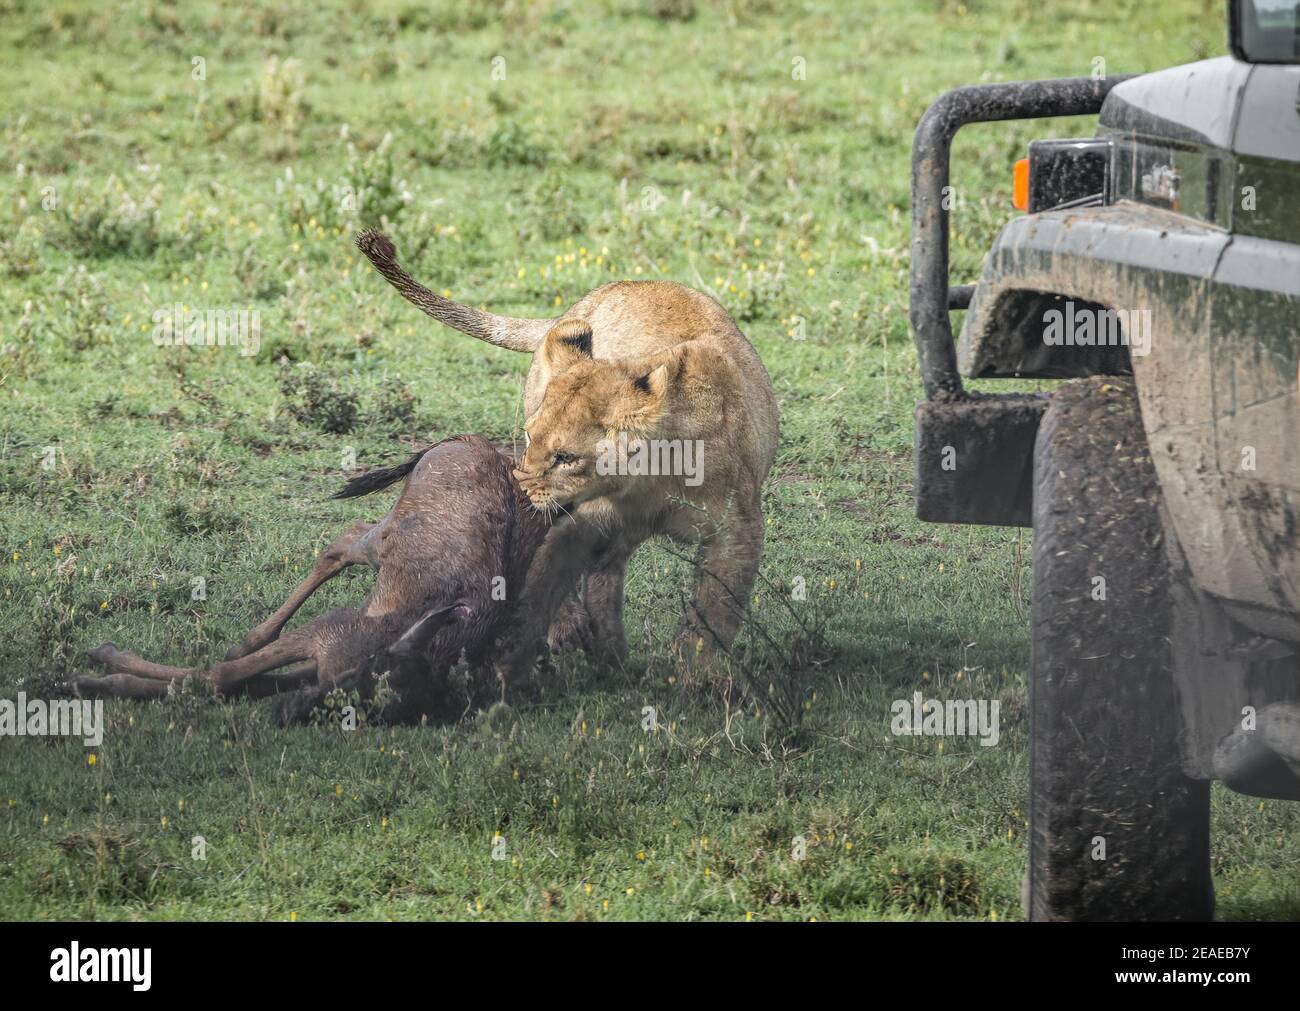 Dos leones de la selva que aprenden a cazar justo al lado de a. safari vehículo turístico jugando con un becerro muerto más salvaje En África Foto de stock